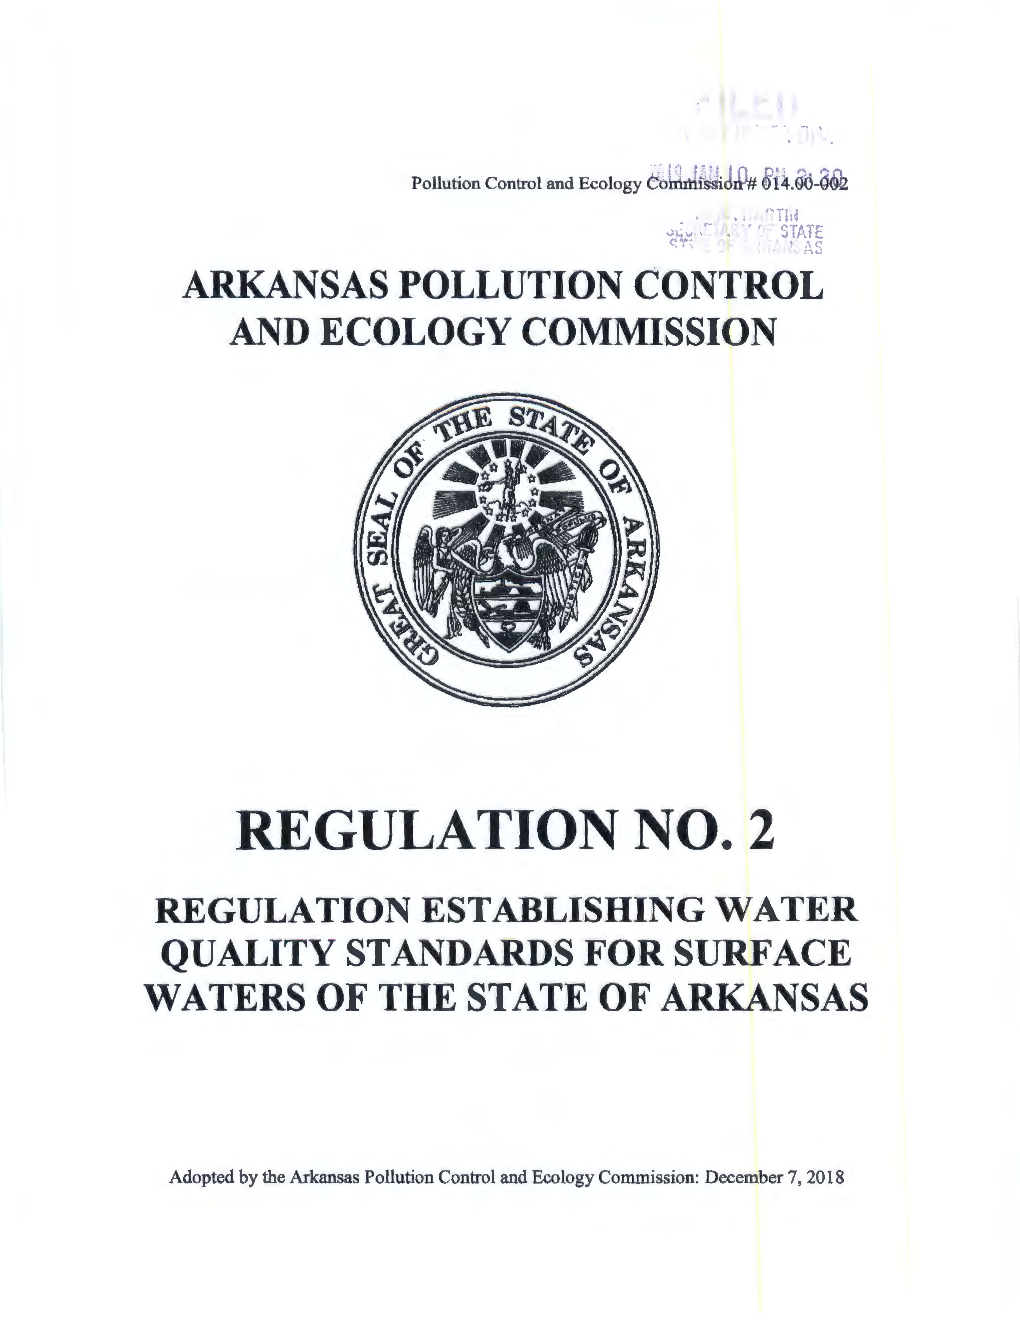 APC&EC Regulation 2